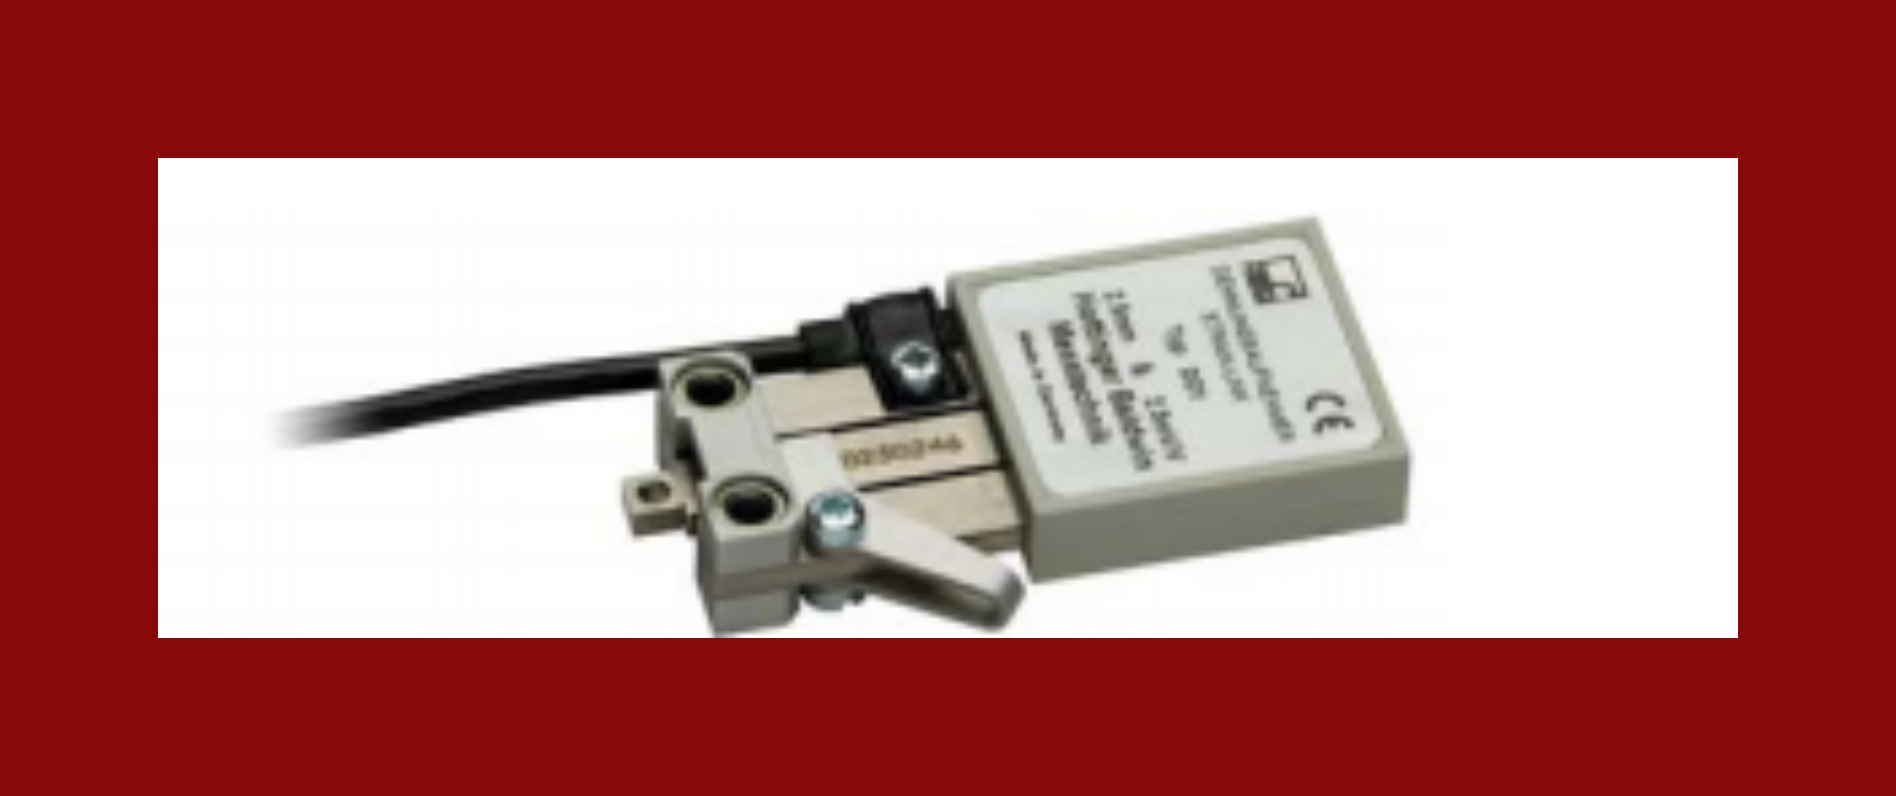 德国HBM位移传感器1-DD1久经验证高精度测量位移和应变易于集成结构紧凑，应用广泛